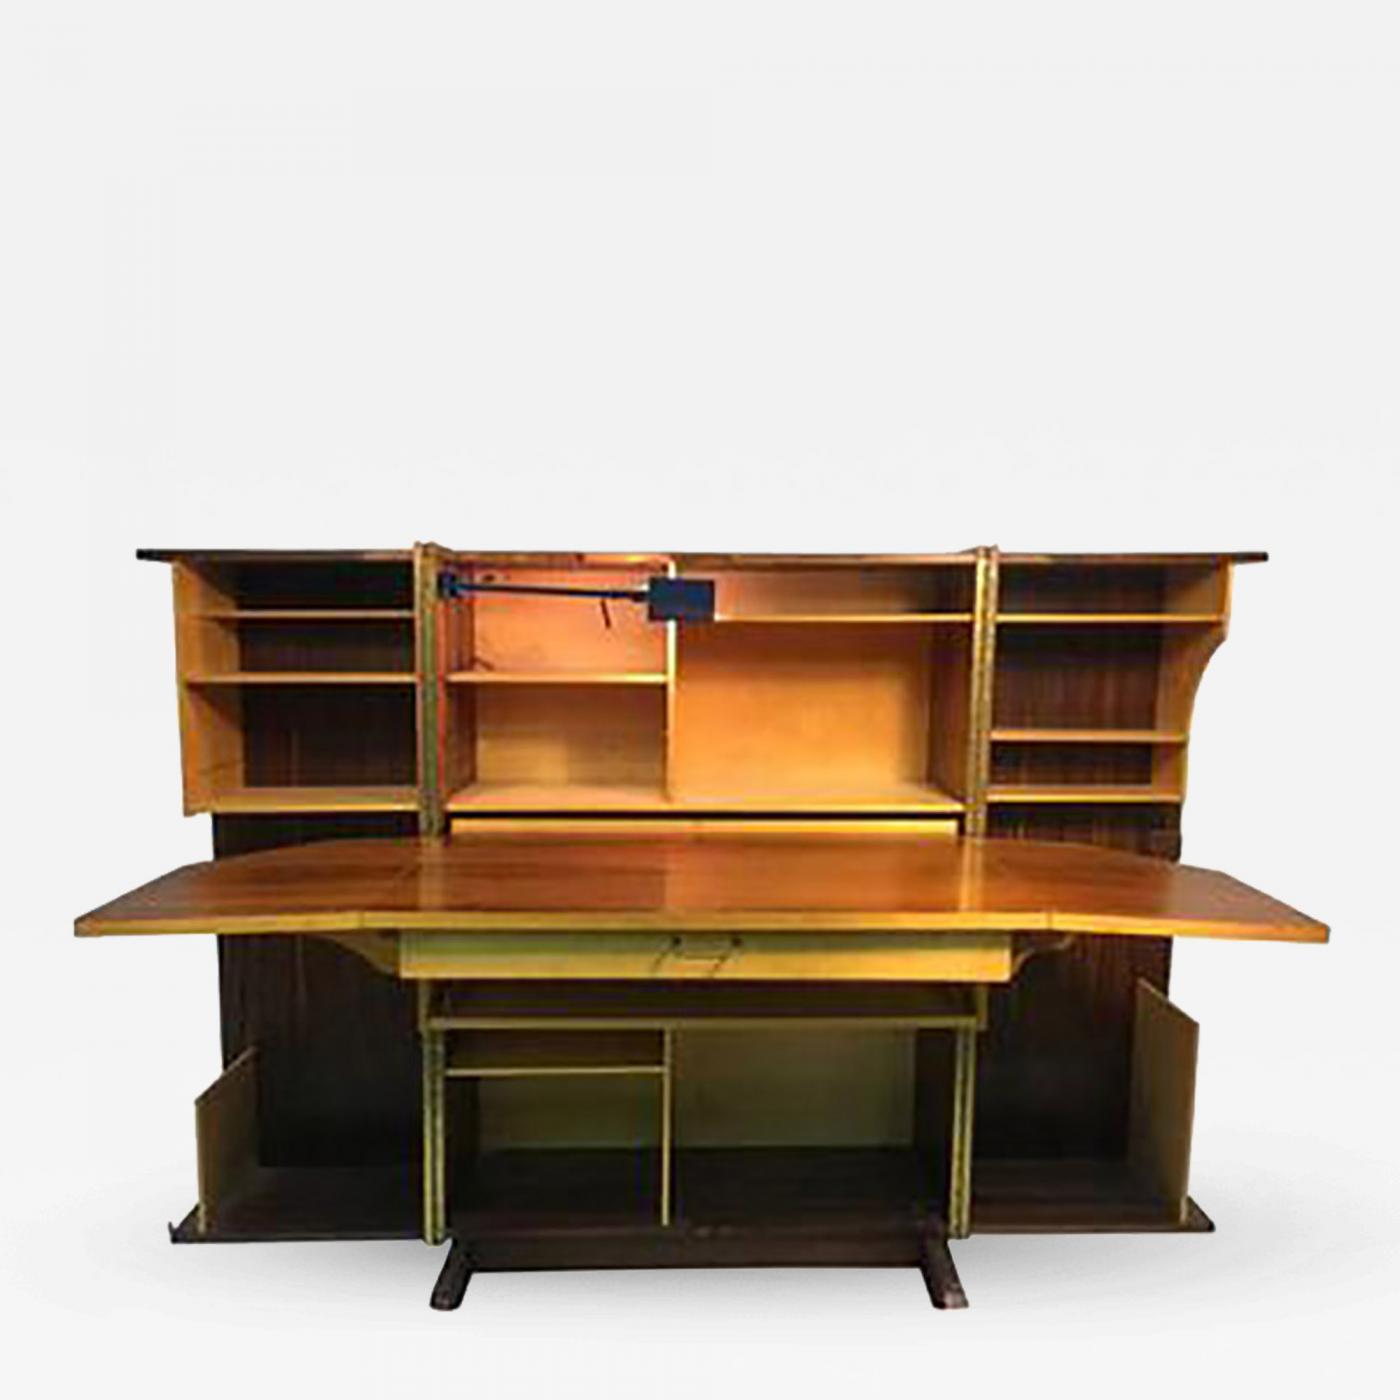 Swiss Design Magic Box Desk by Mummenthaler & Meier, Switzerland 1960's